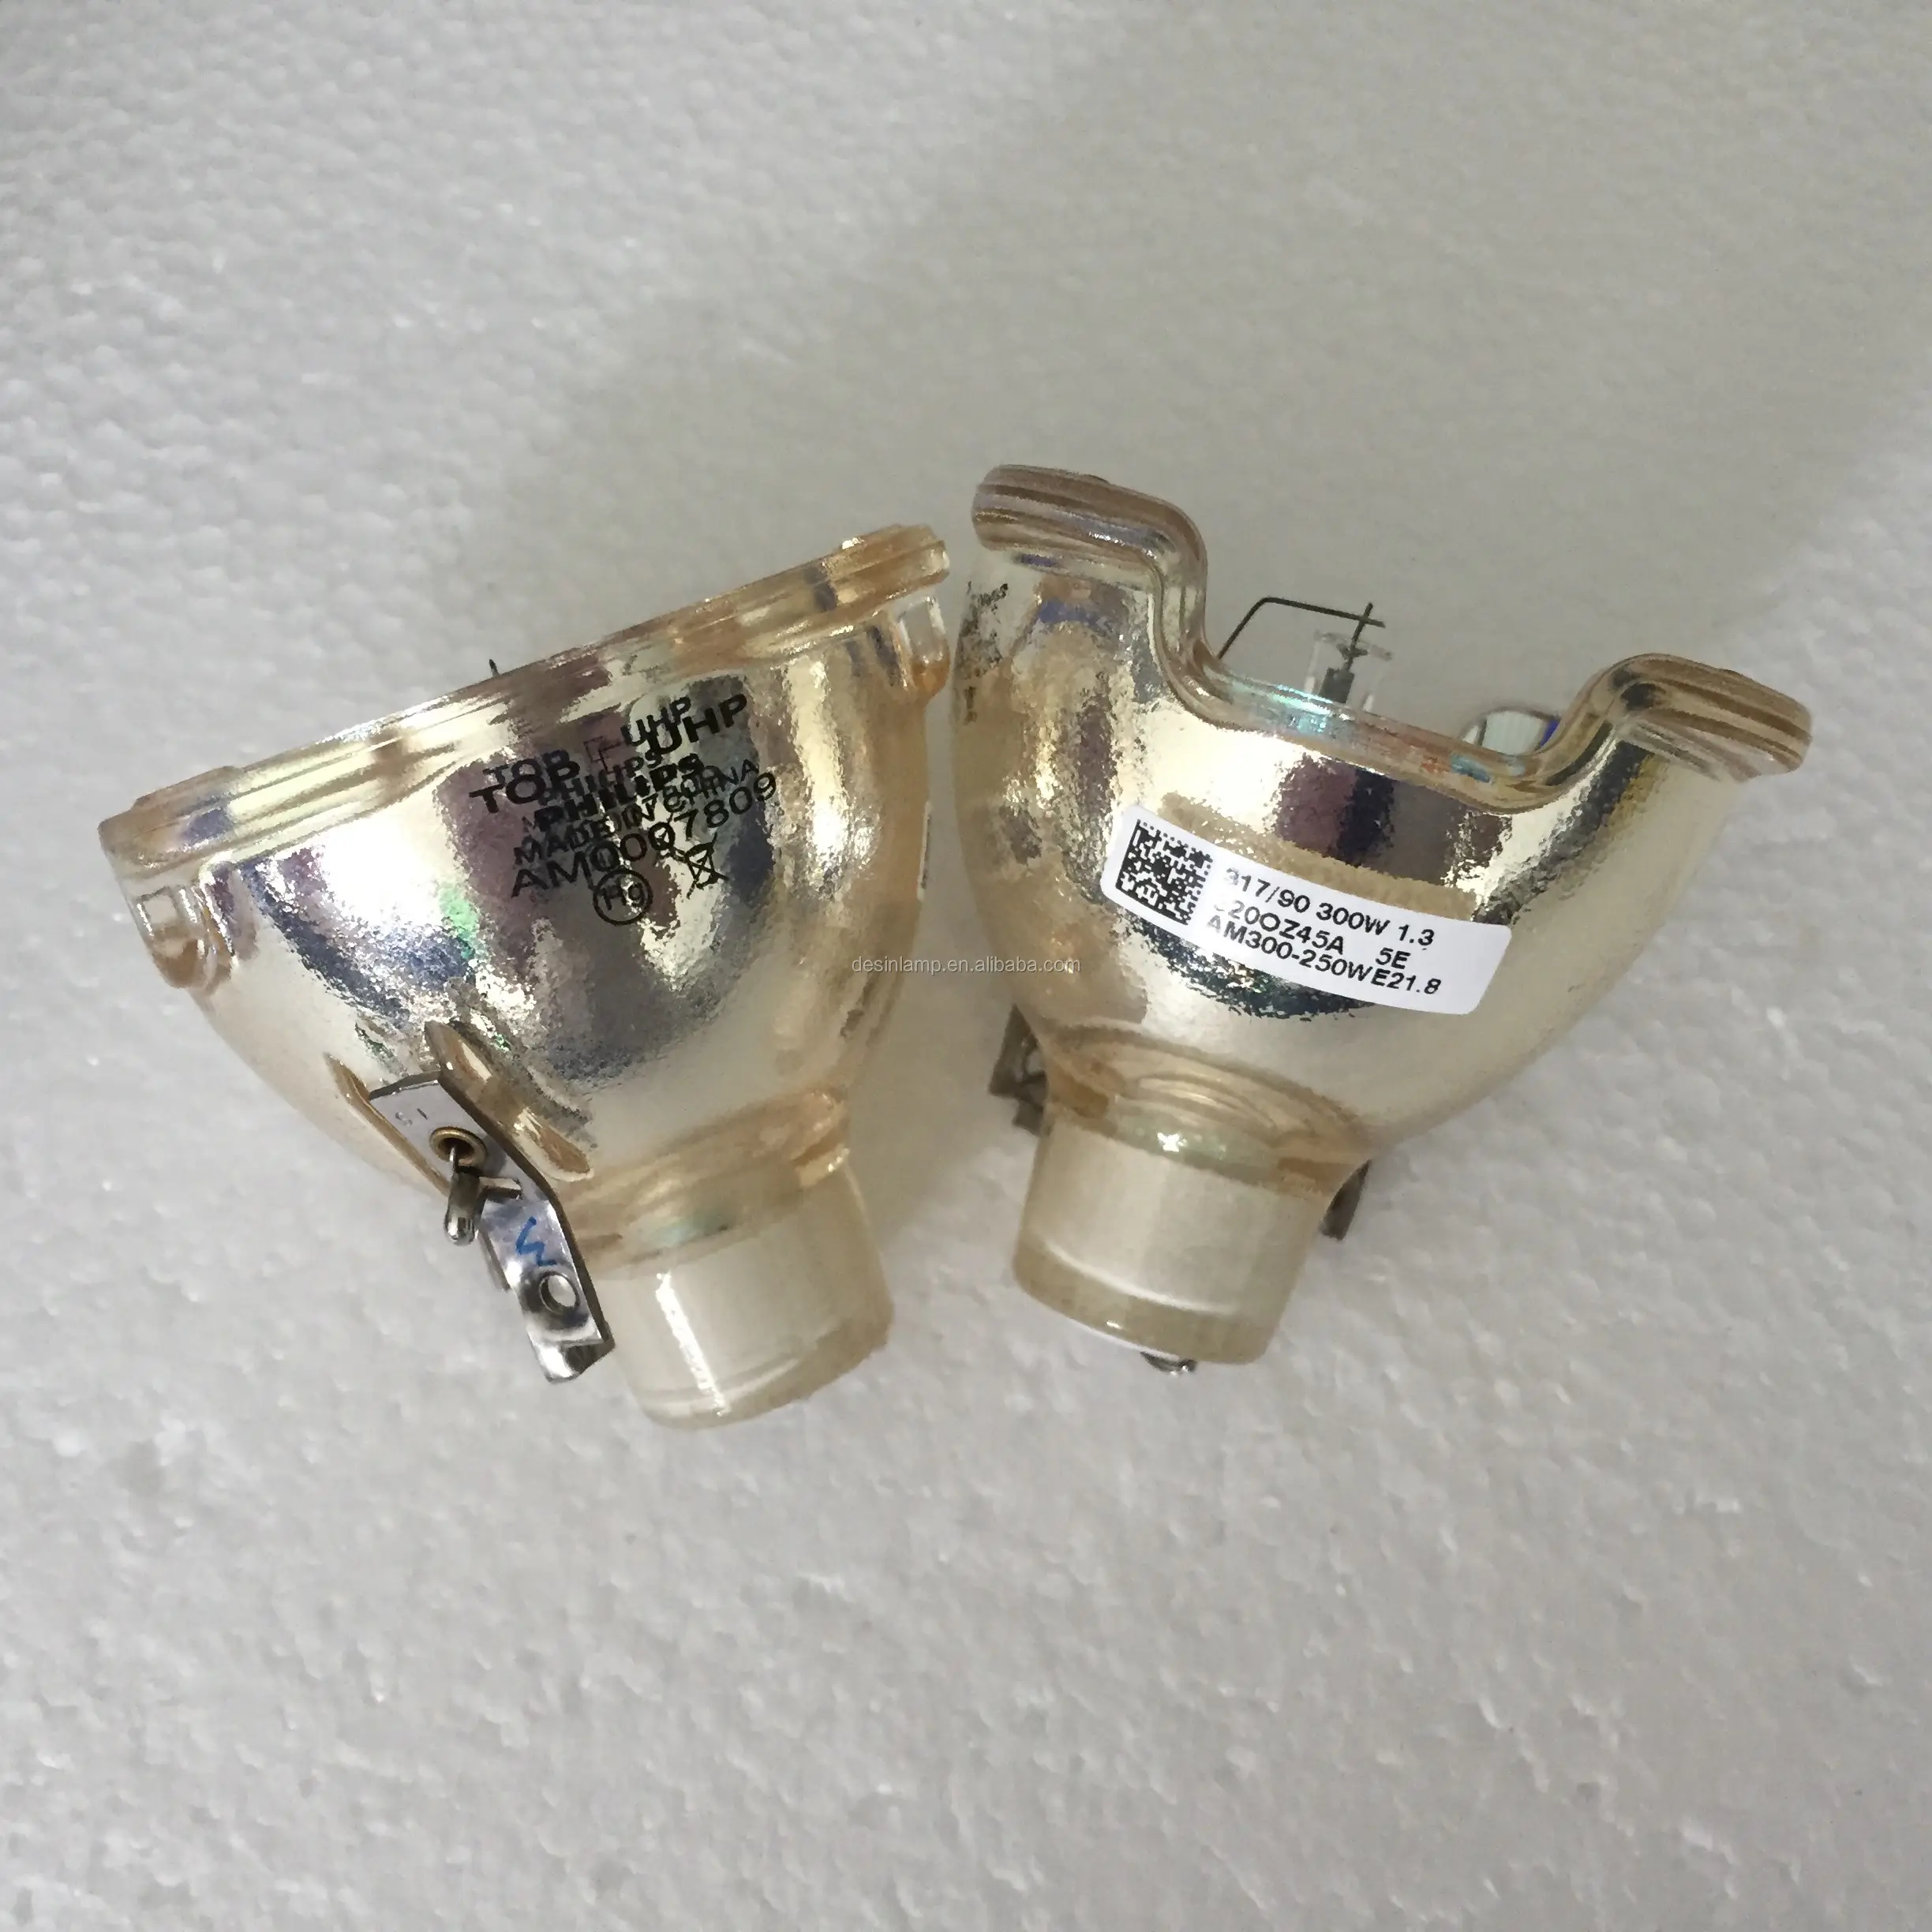 Wholesale UHP AM 300-250W E21.8 projector lamp part no. 5811116701-s for vivitek d963hd d965 projectors